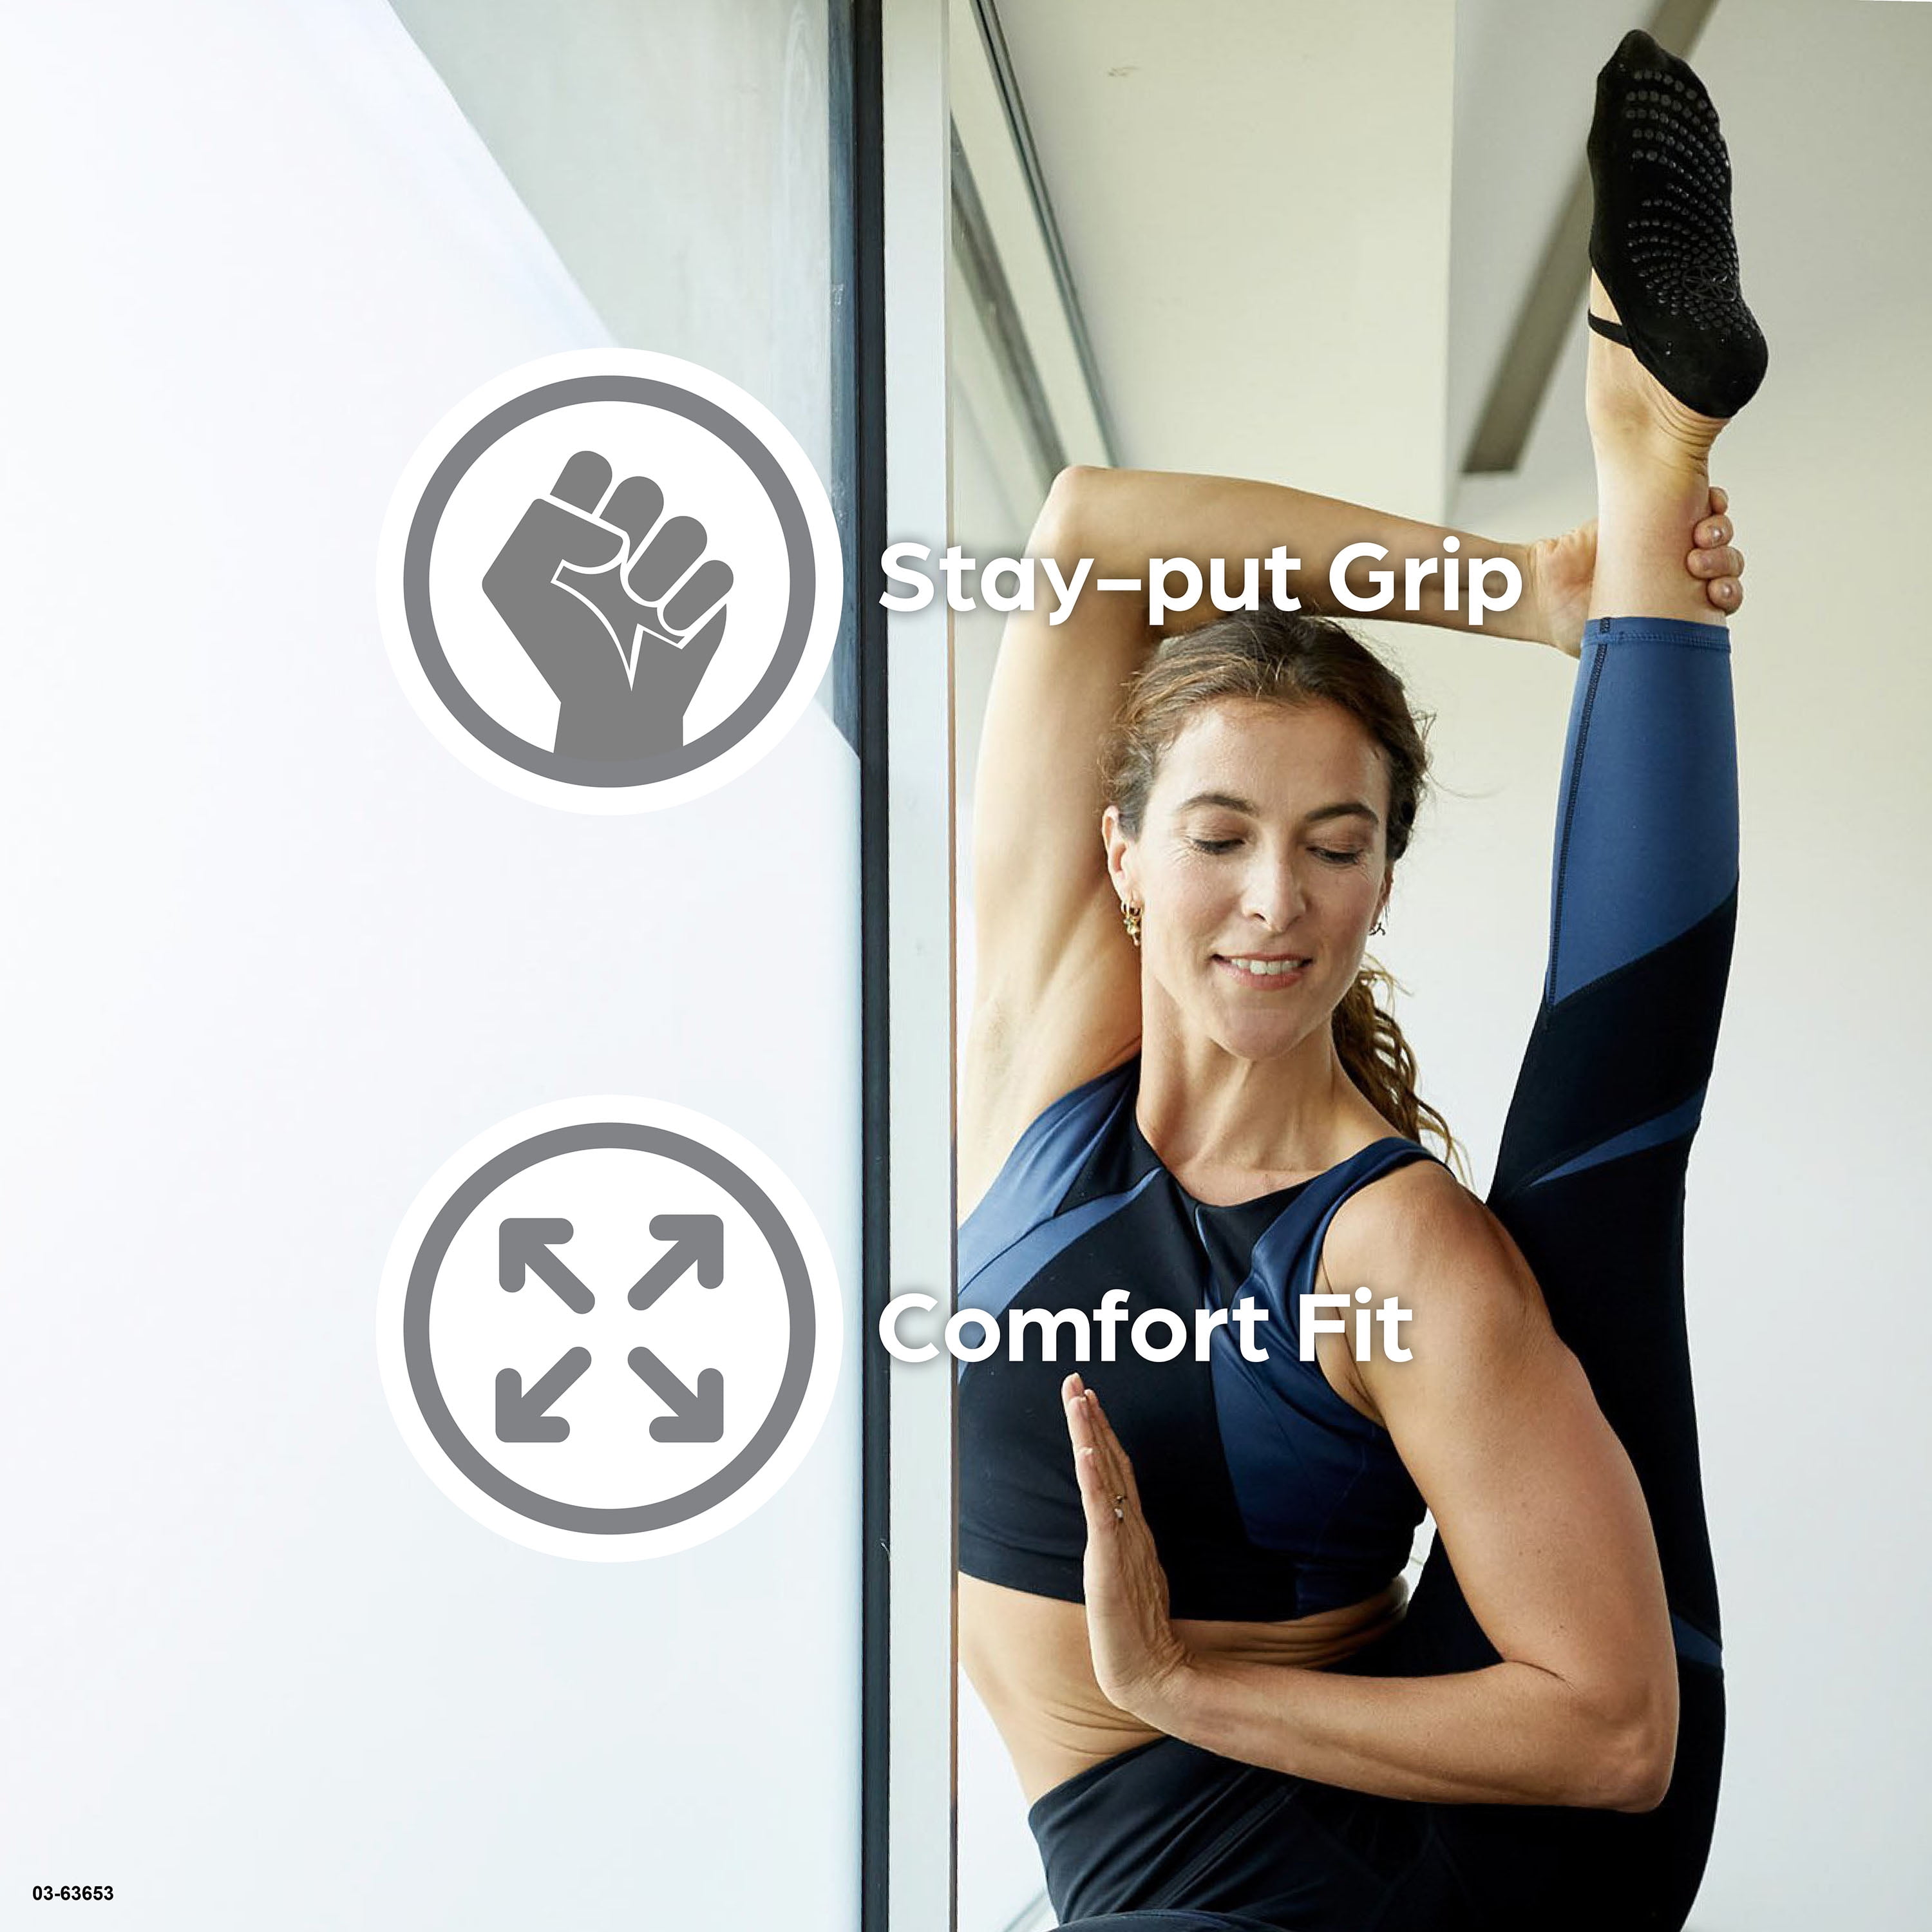 GAIAM Grippy Yoga Socks - Otros accesorios de yoga Mujer, Comprar online